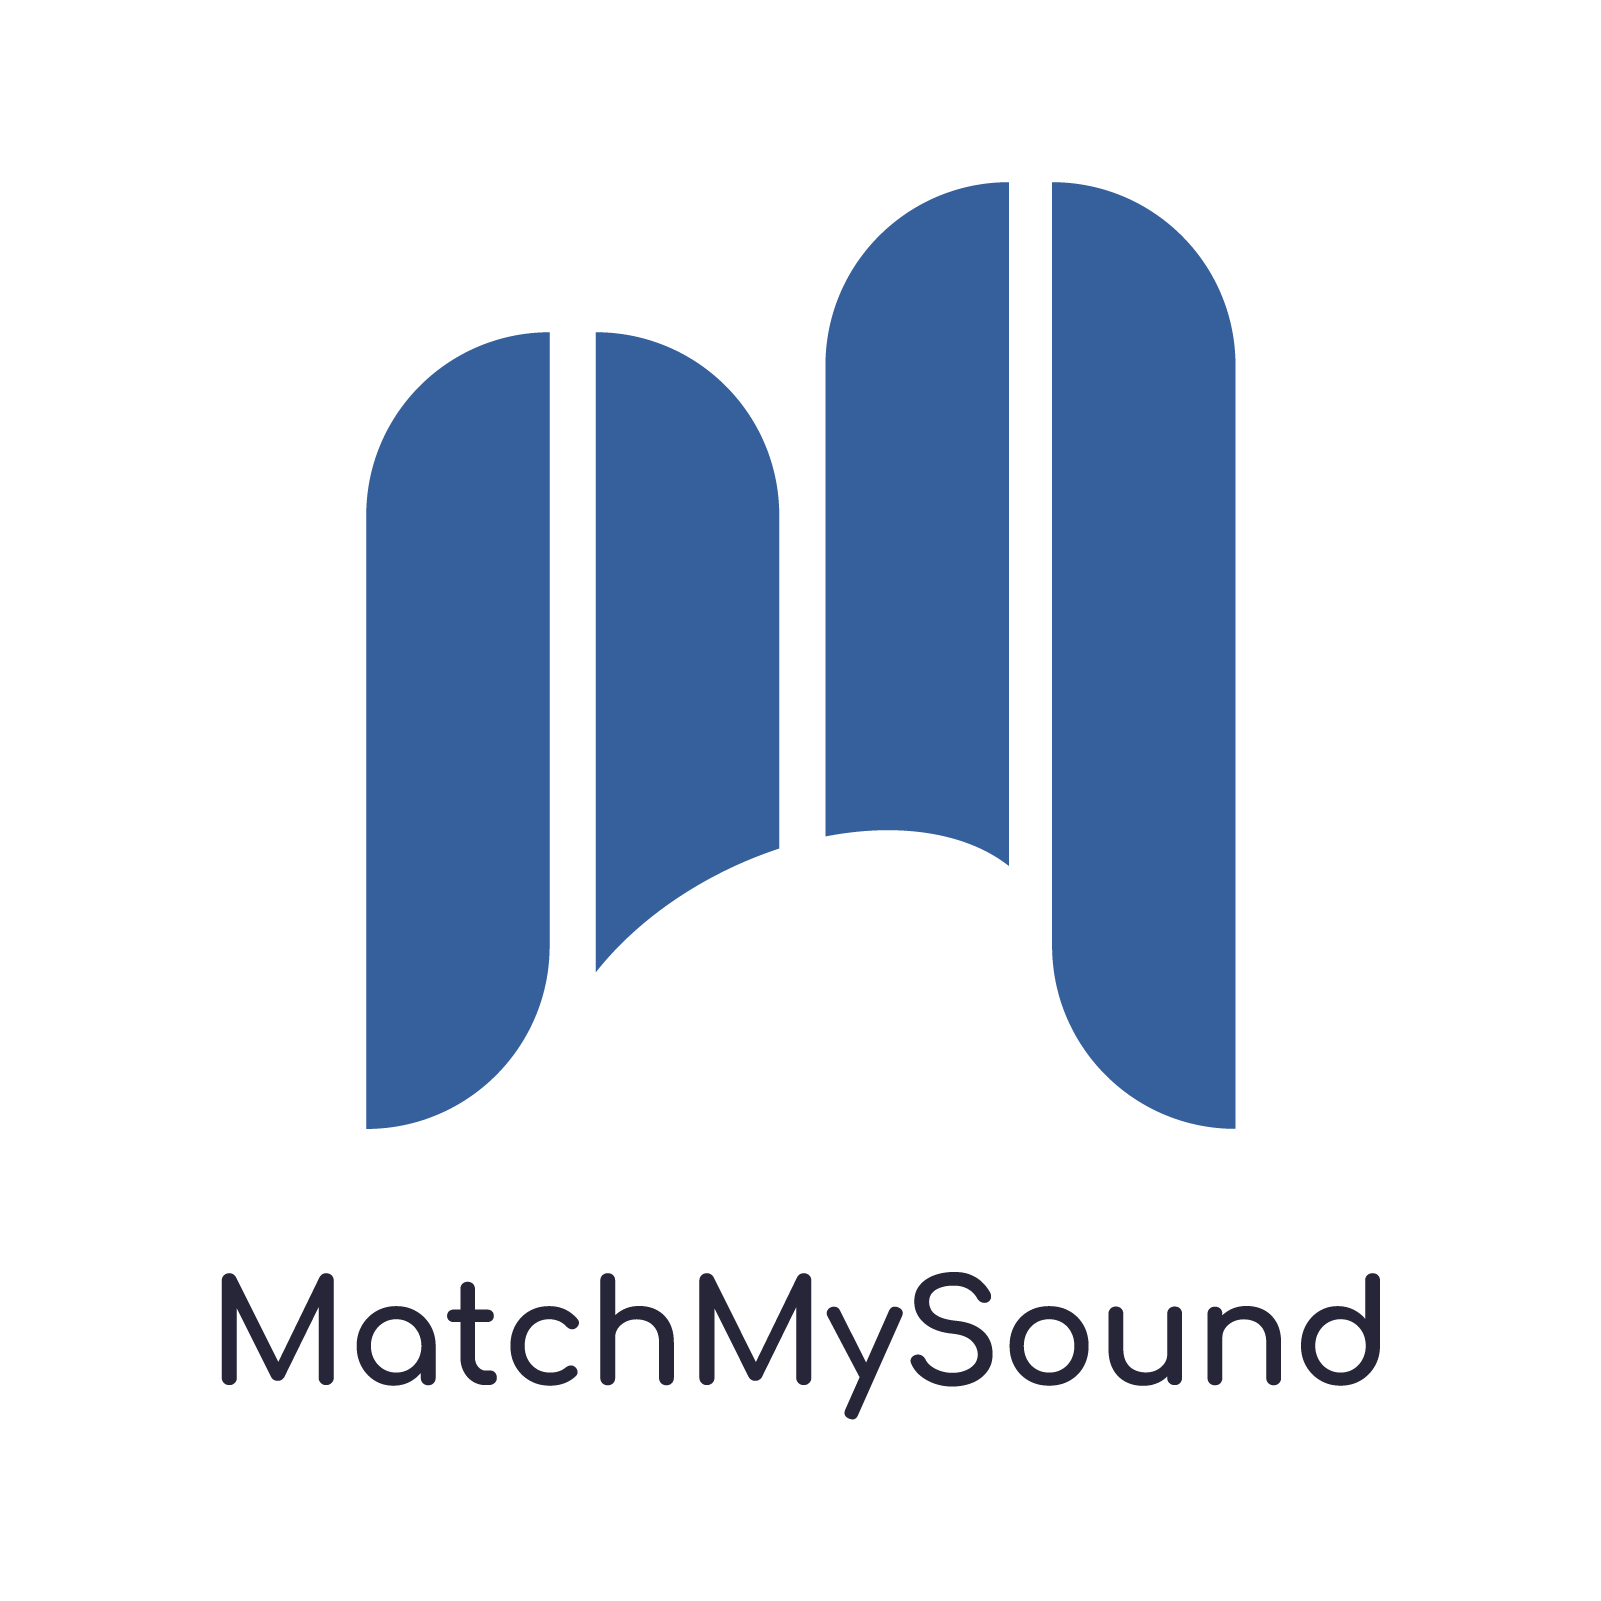 MatchMySound